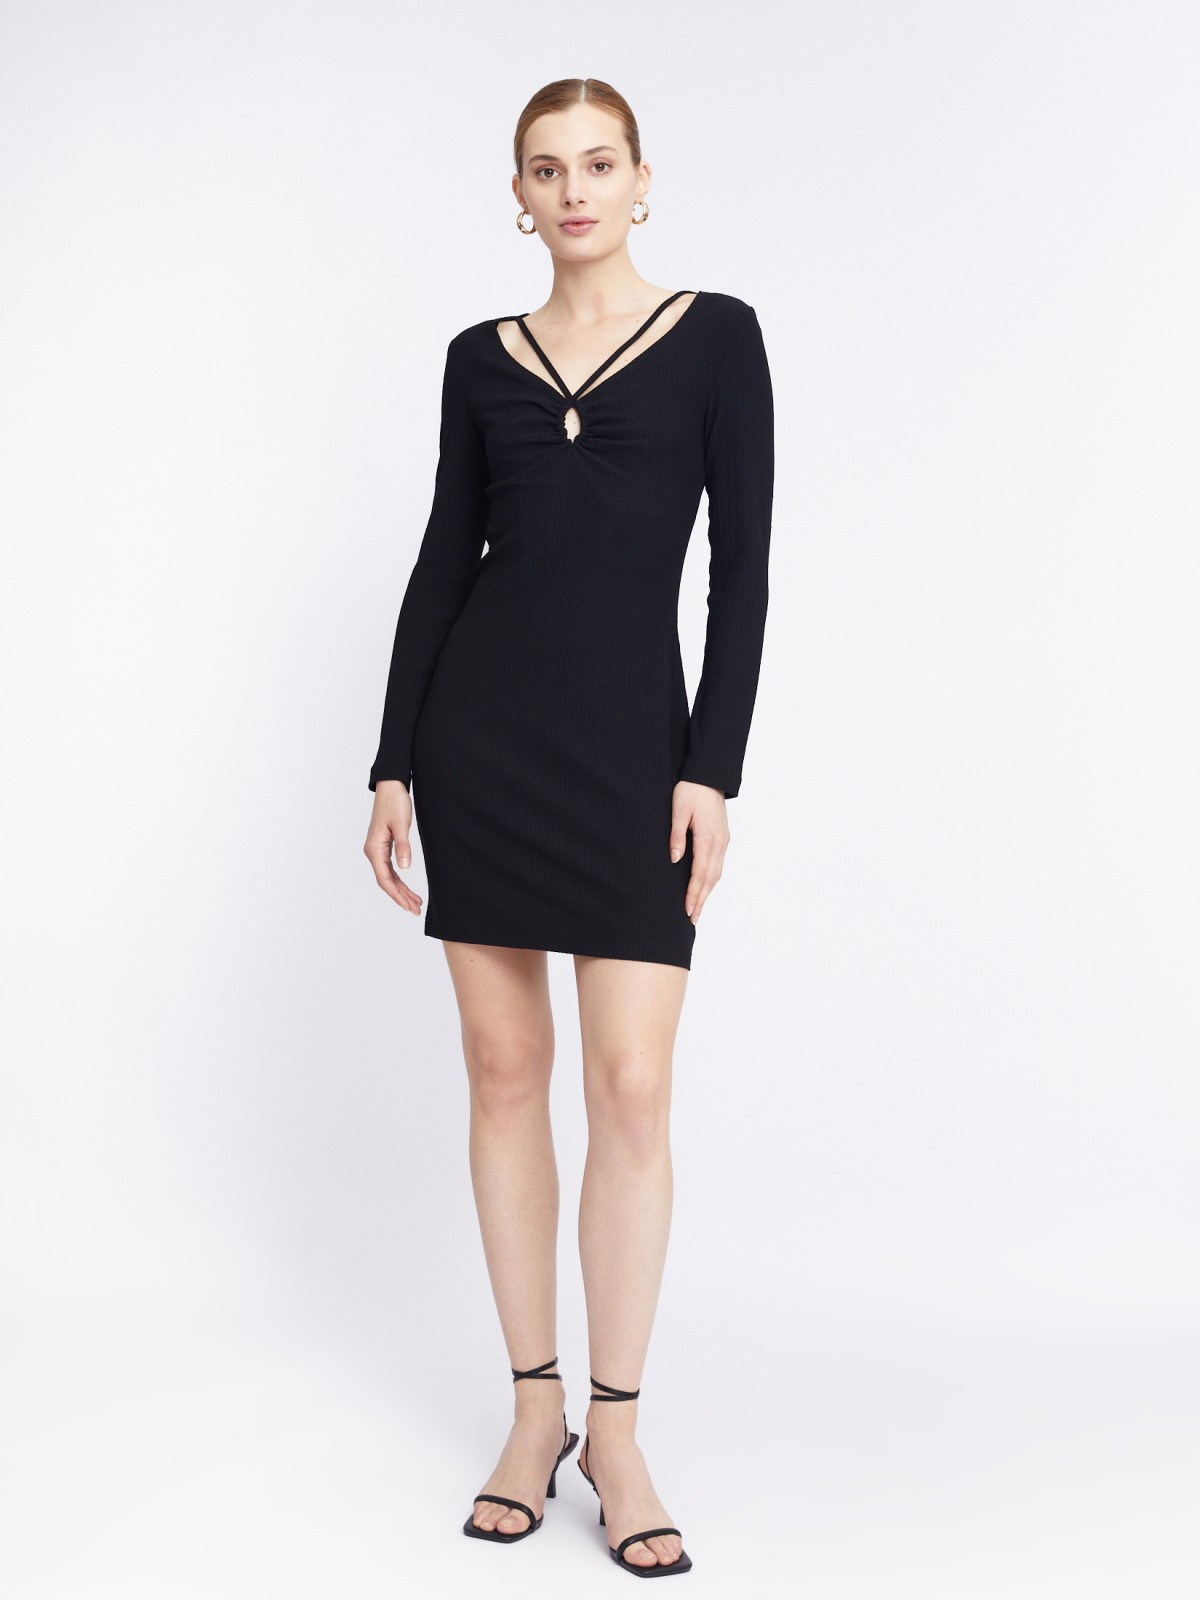 Трикотажное платье длины мини с акцентным вырезом zolla 223338159151, цвет черный, размер XS - фото 2